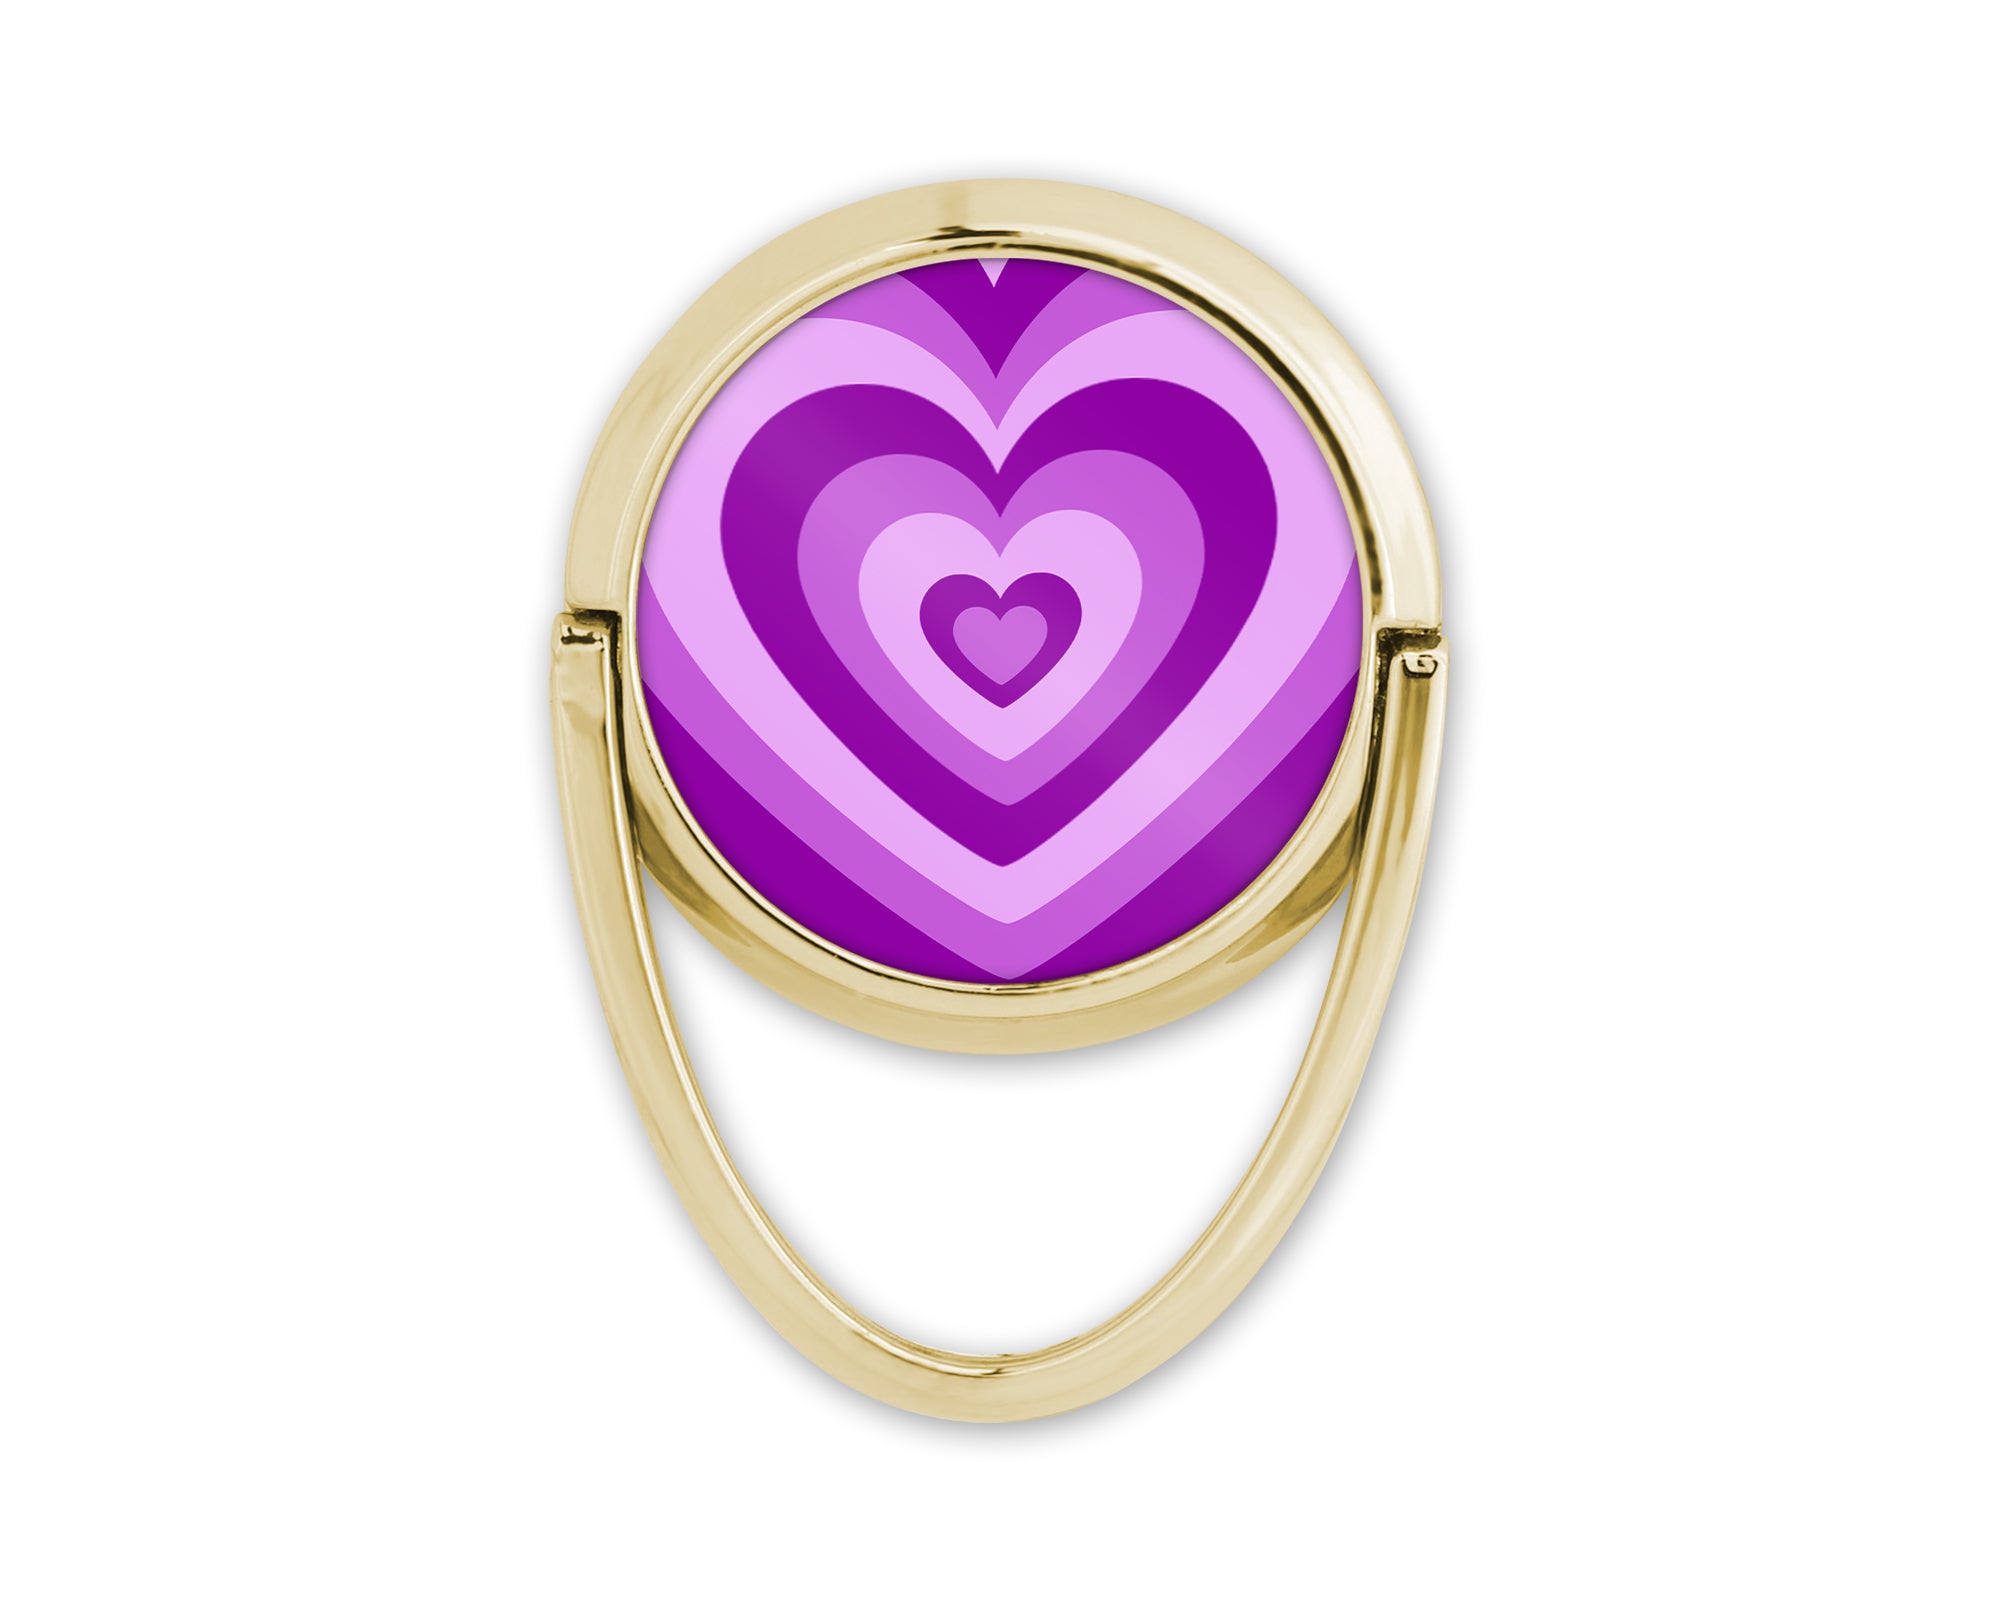 Découvrez notre anneau de téléphone doré, l'accessoire girly qui ajoute une touche d'élégance à votre style. Avec son design original, cet anneau devient bien plus qu'un support pour votre téléphone, c'est un bijou qui complète votre look avec éclat.